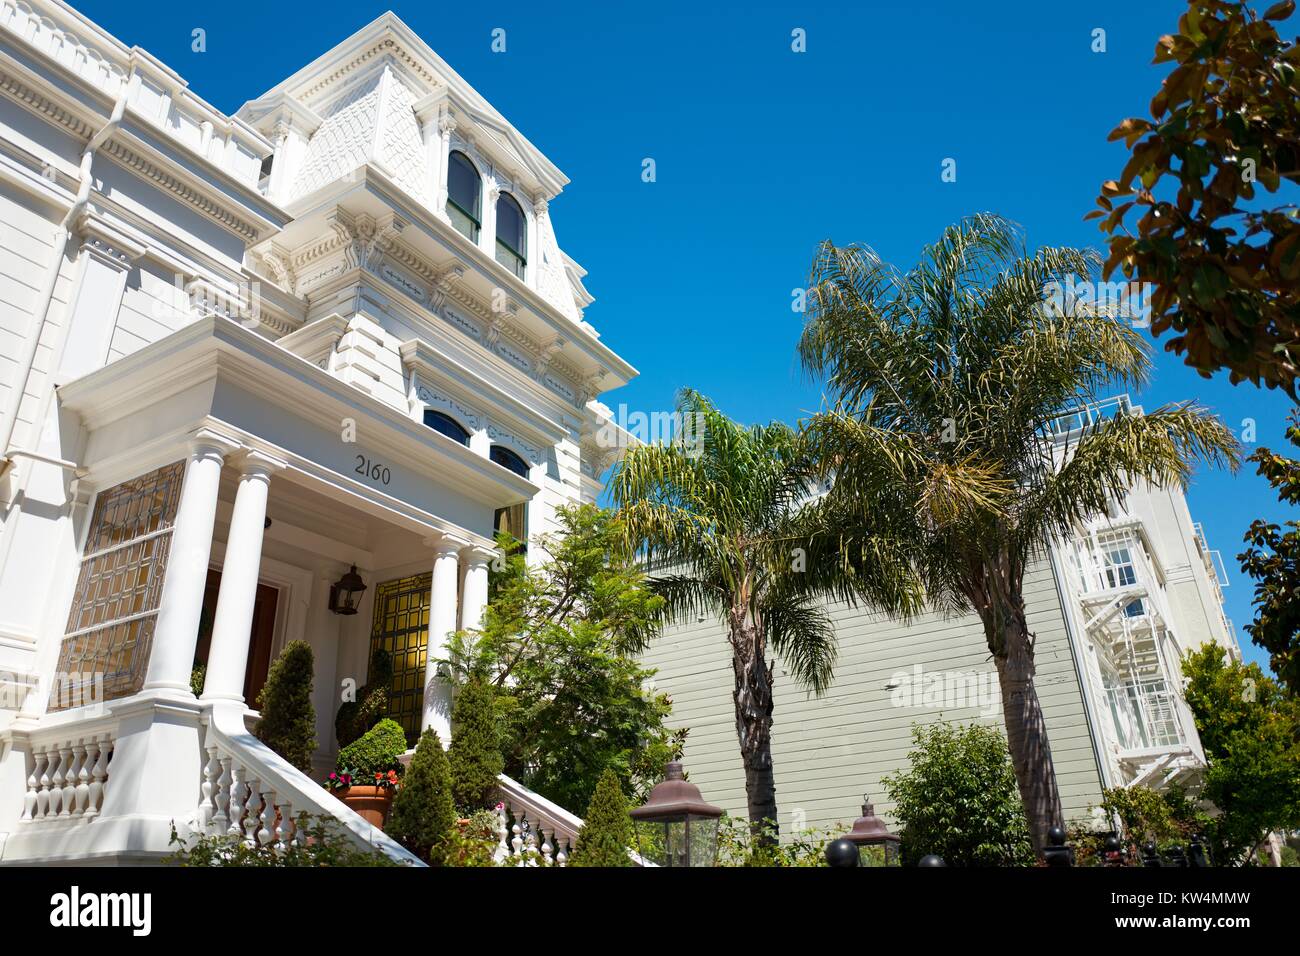 Blanco elegante mansión de estilo victoriano, con palmeras, en un día soleado en el hueco de la vaca barrio de San Francisco, California, 28 de agosto de 2016. Foto de stock